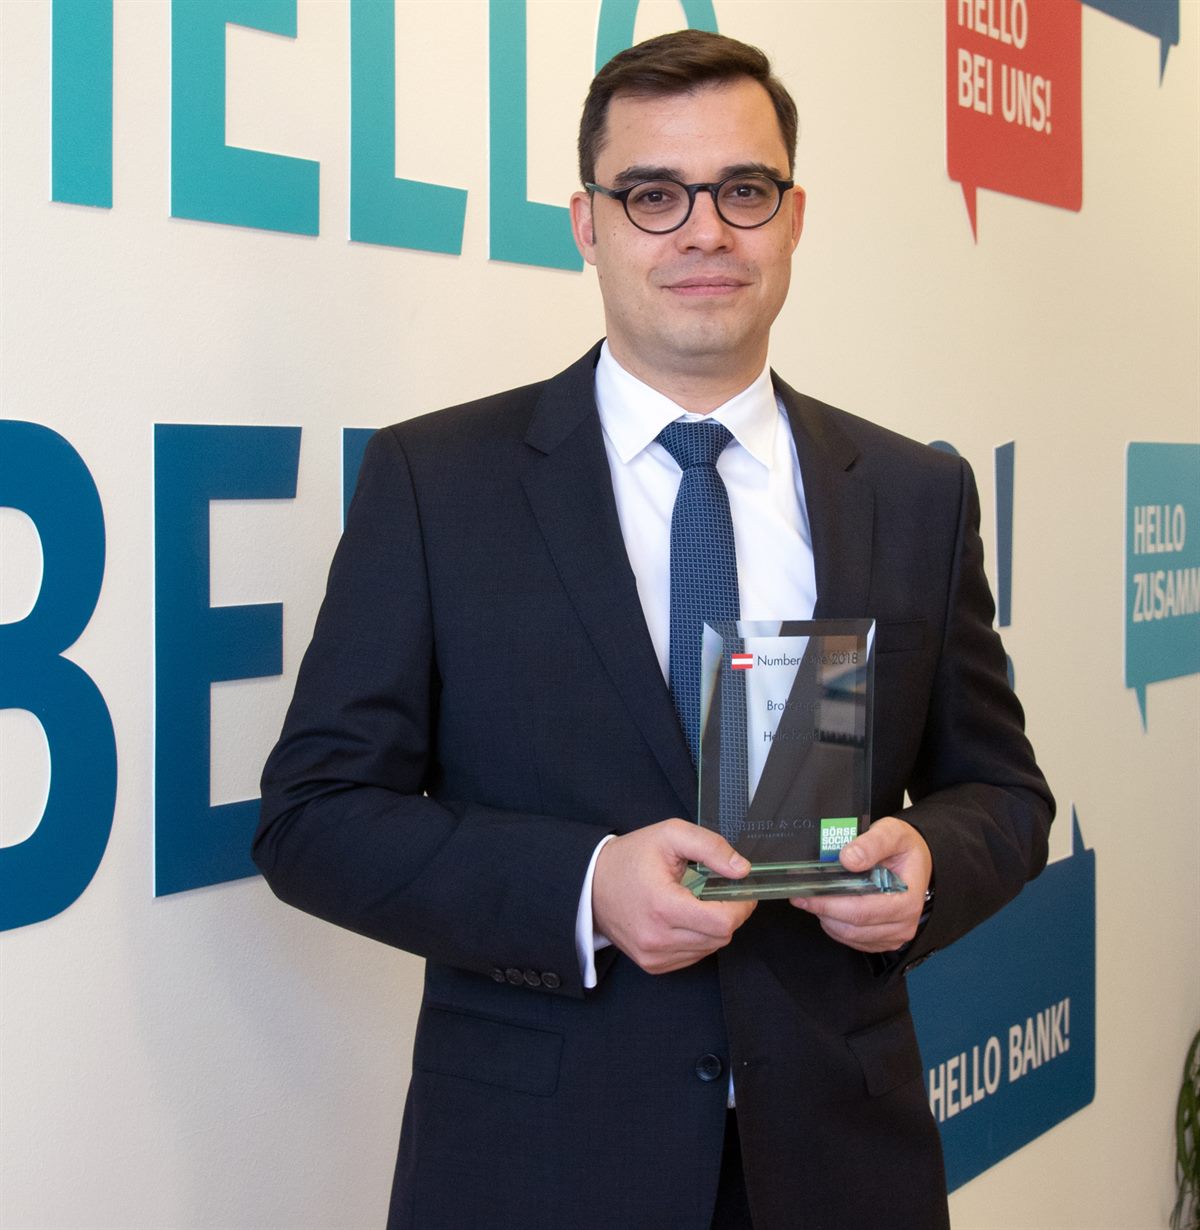 Hellobank_Award_MD_Niederreiner